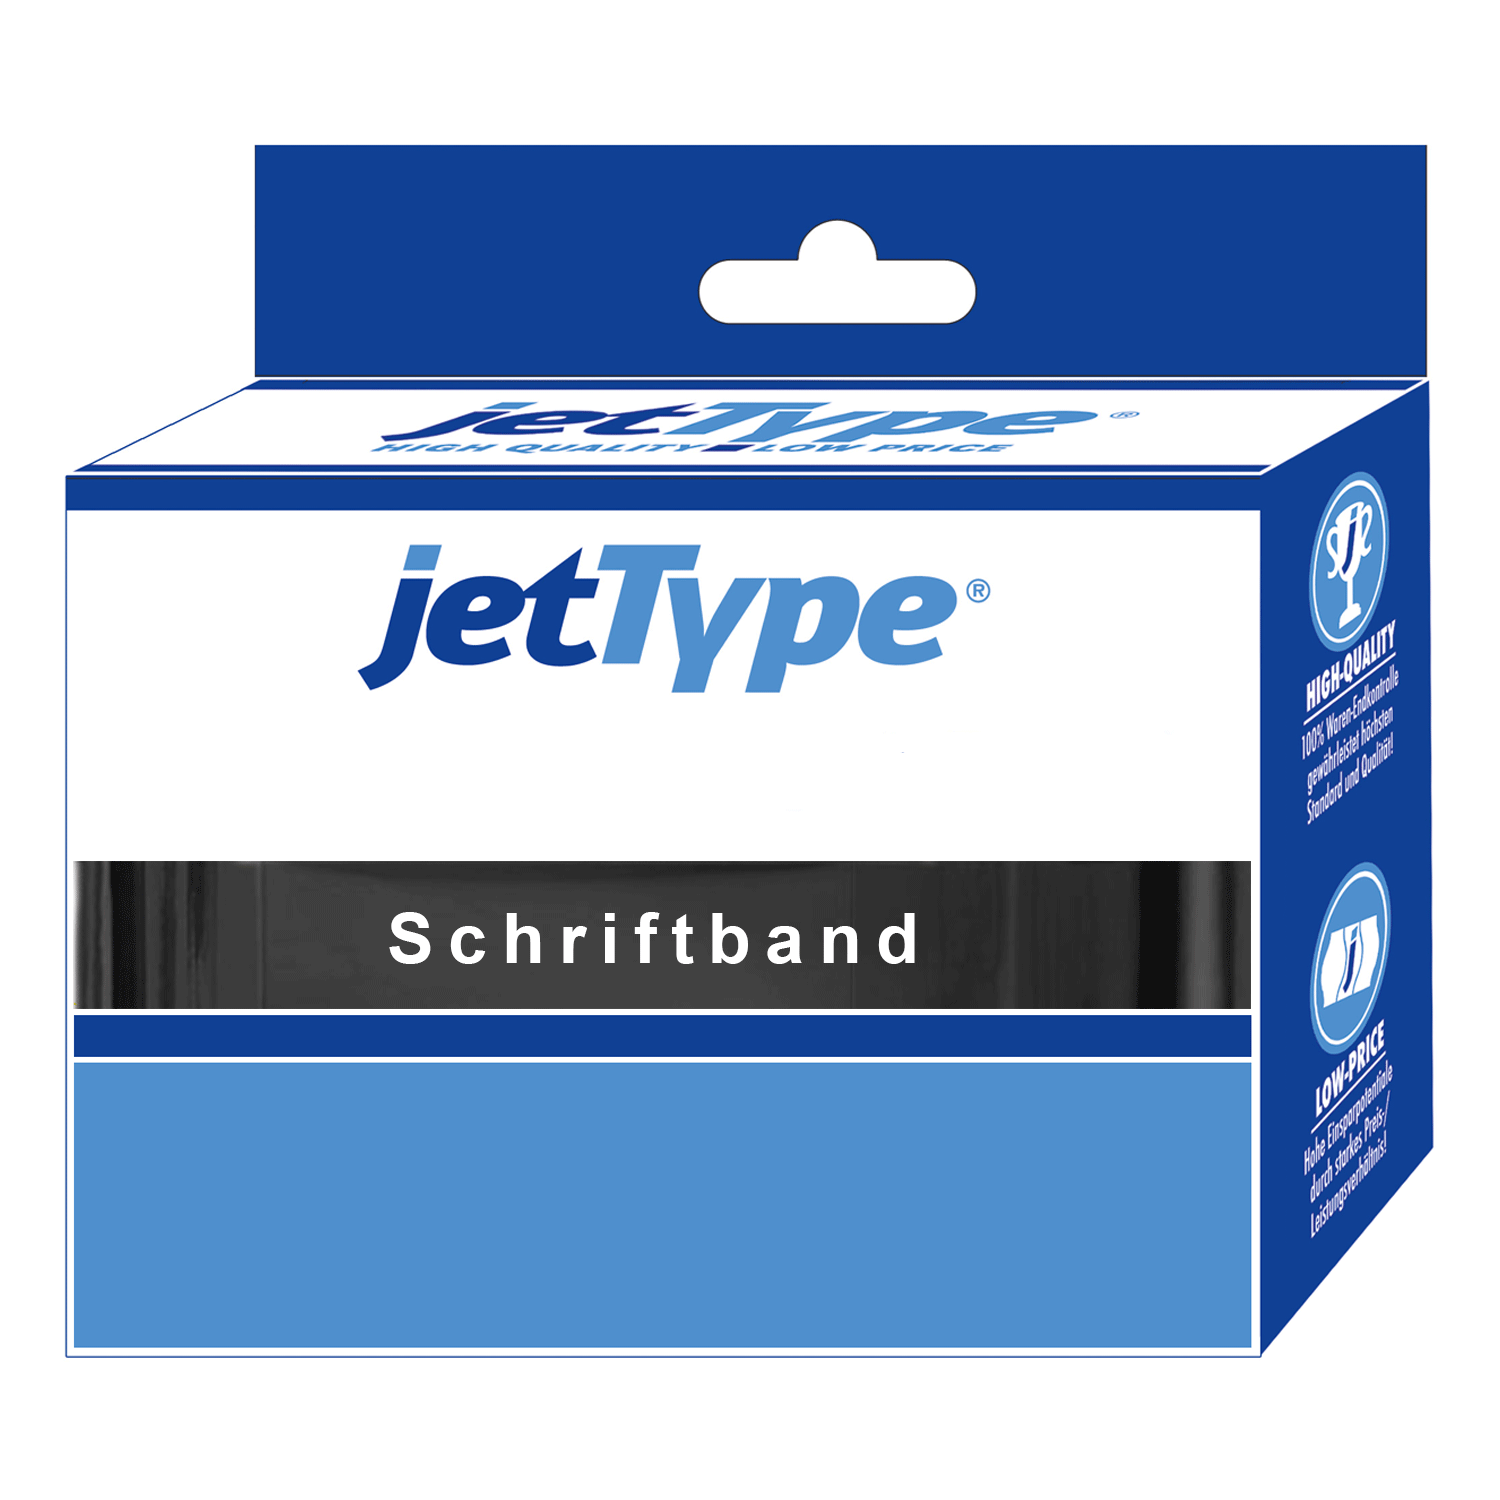 jetType Schriftband kompatibel zu Dymo S0720680 40913 9 mm 7 m schwarz auf weiß selbstklebend